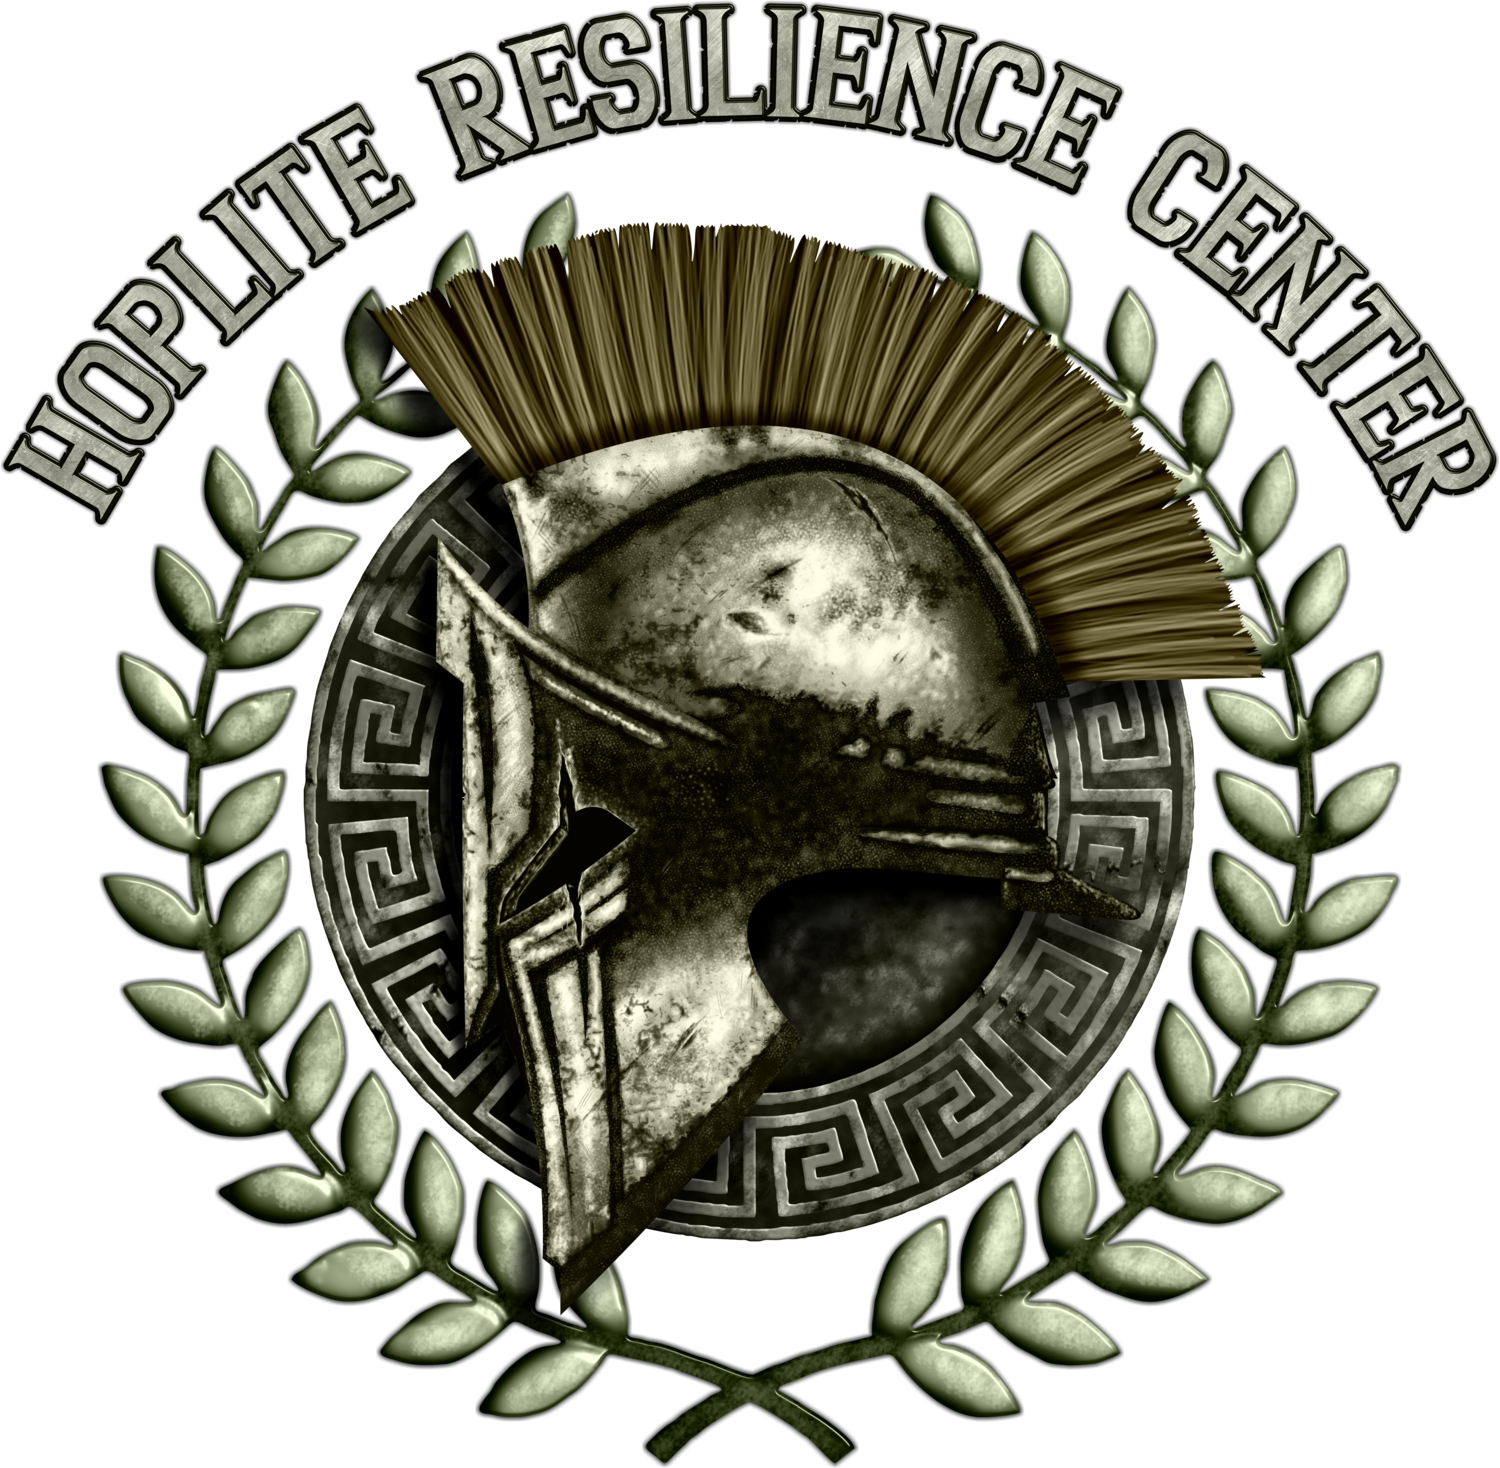 Hoplite Resilience Center